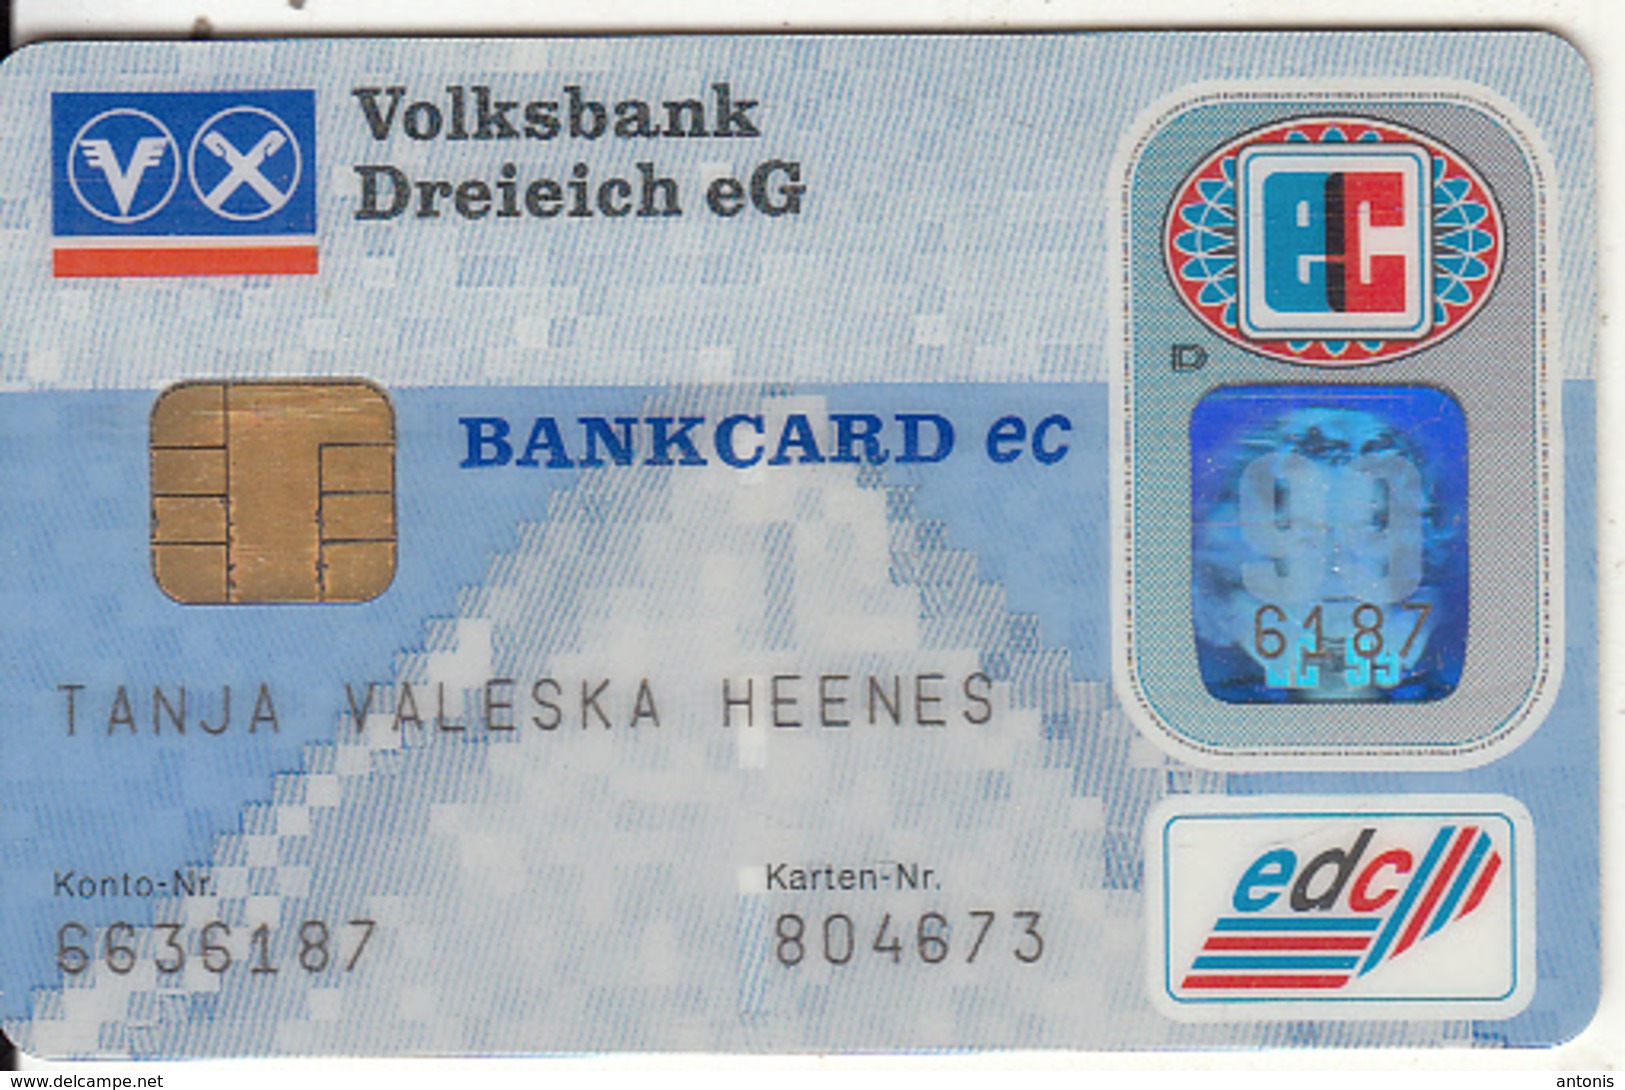 GERMANY - Volksbank Dreieich EG, Eurocheque, 04/96, Used - Tarjetas De Crédito (caducidad Min 10 Años)